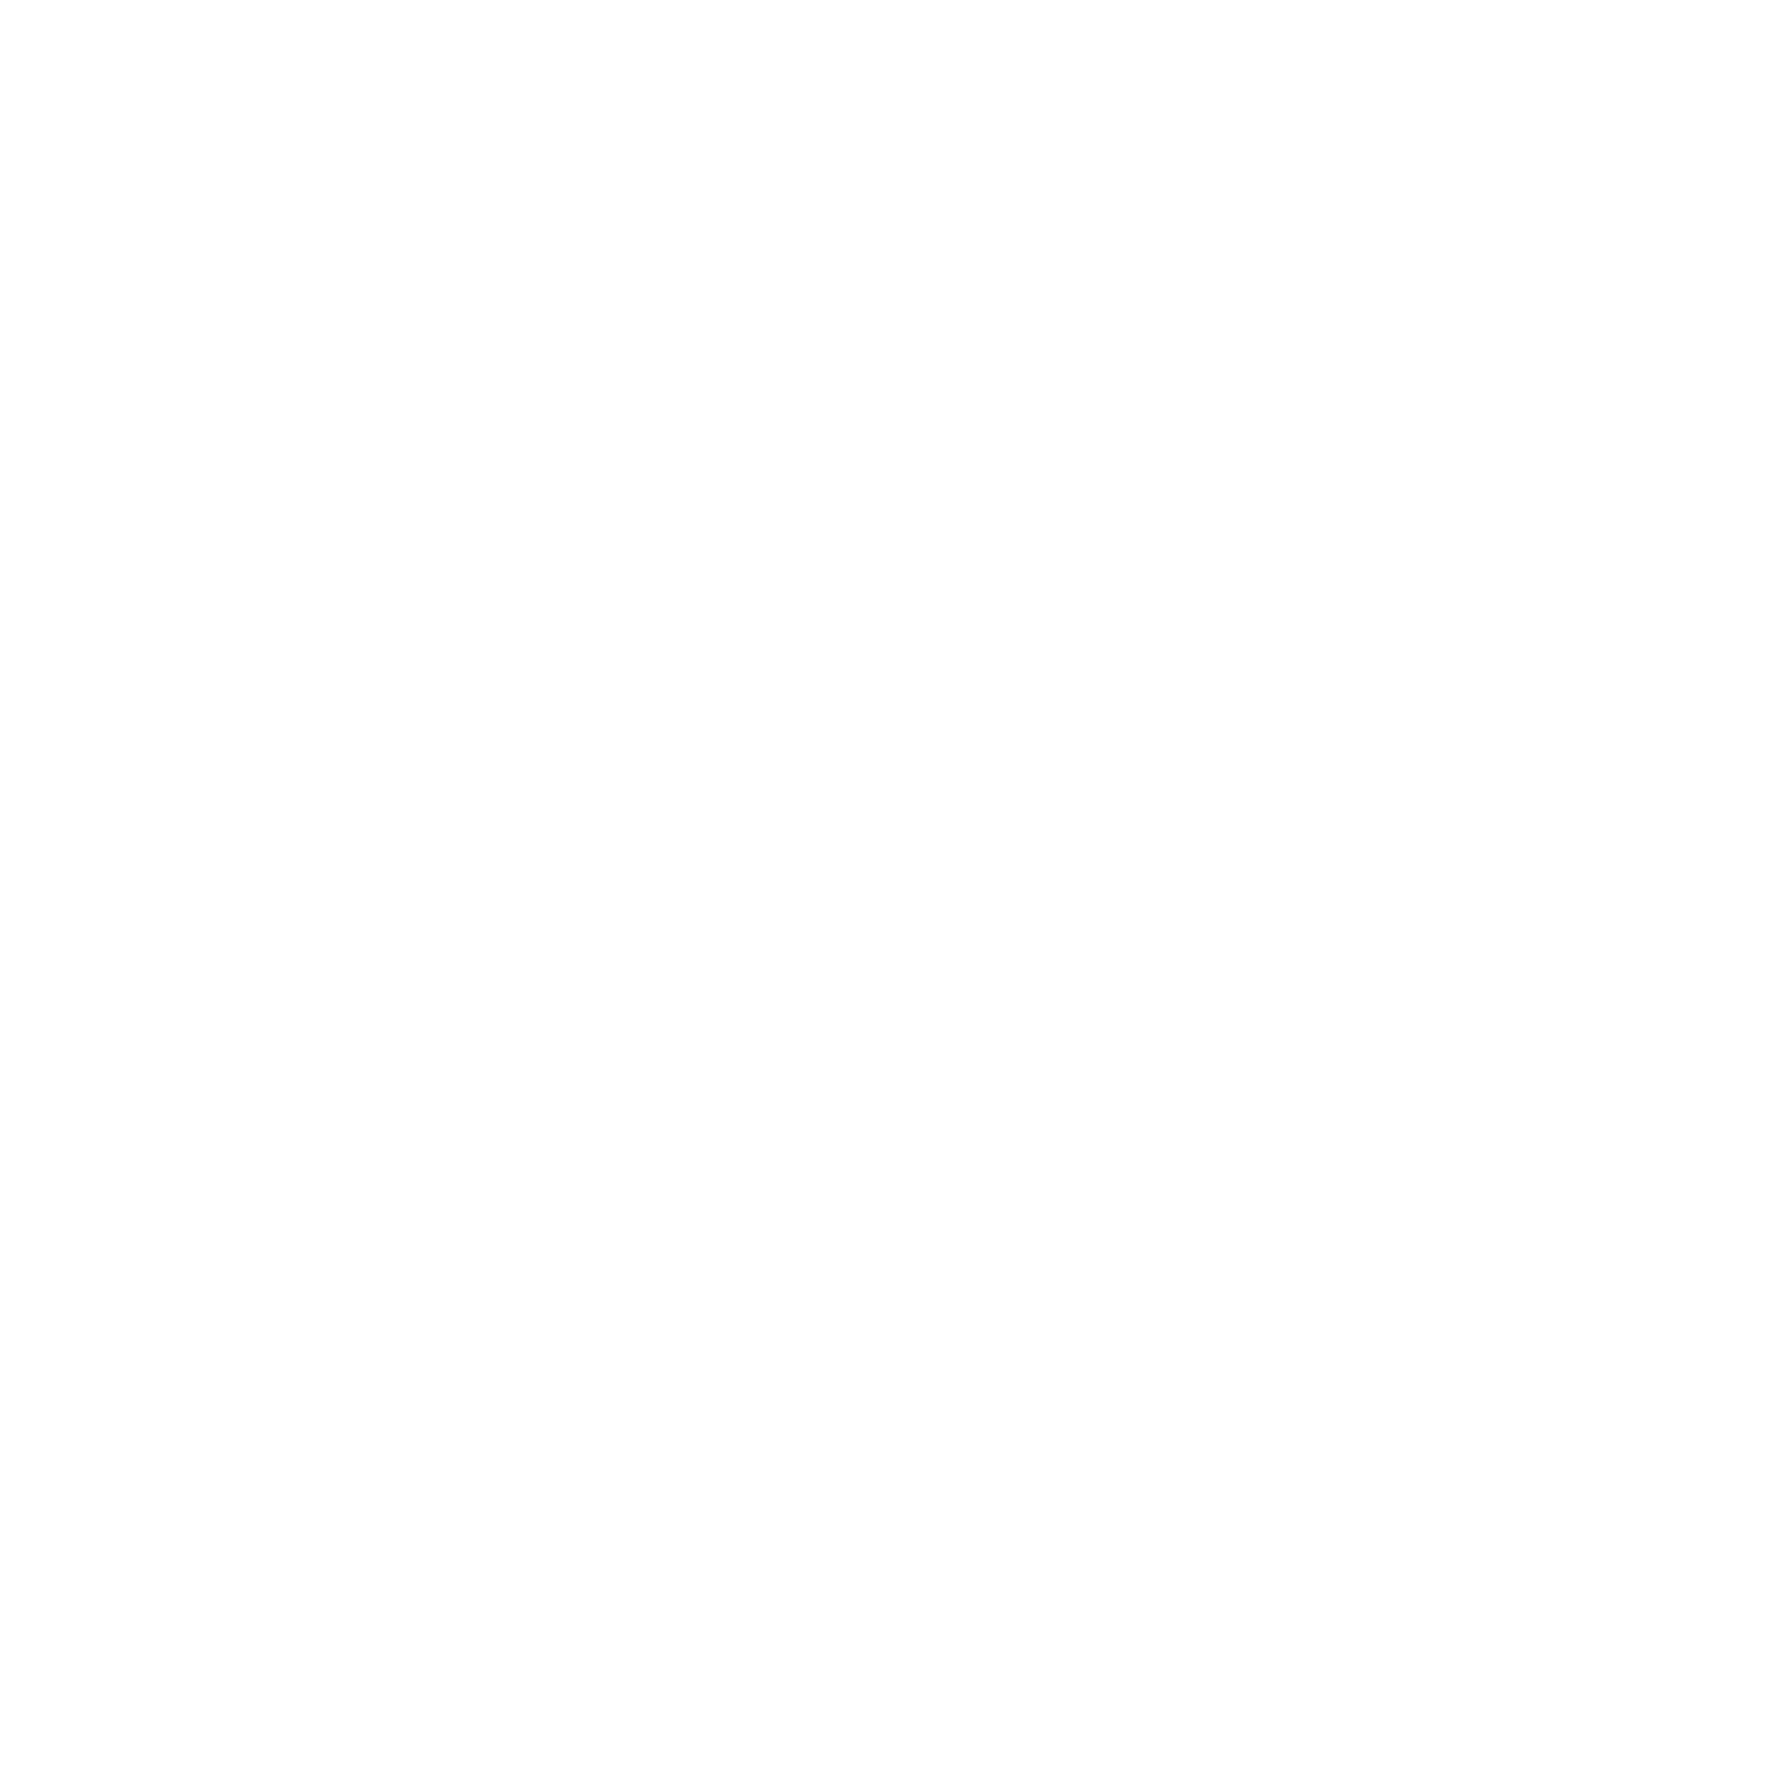 LOGO A Mong Ad-02